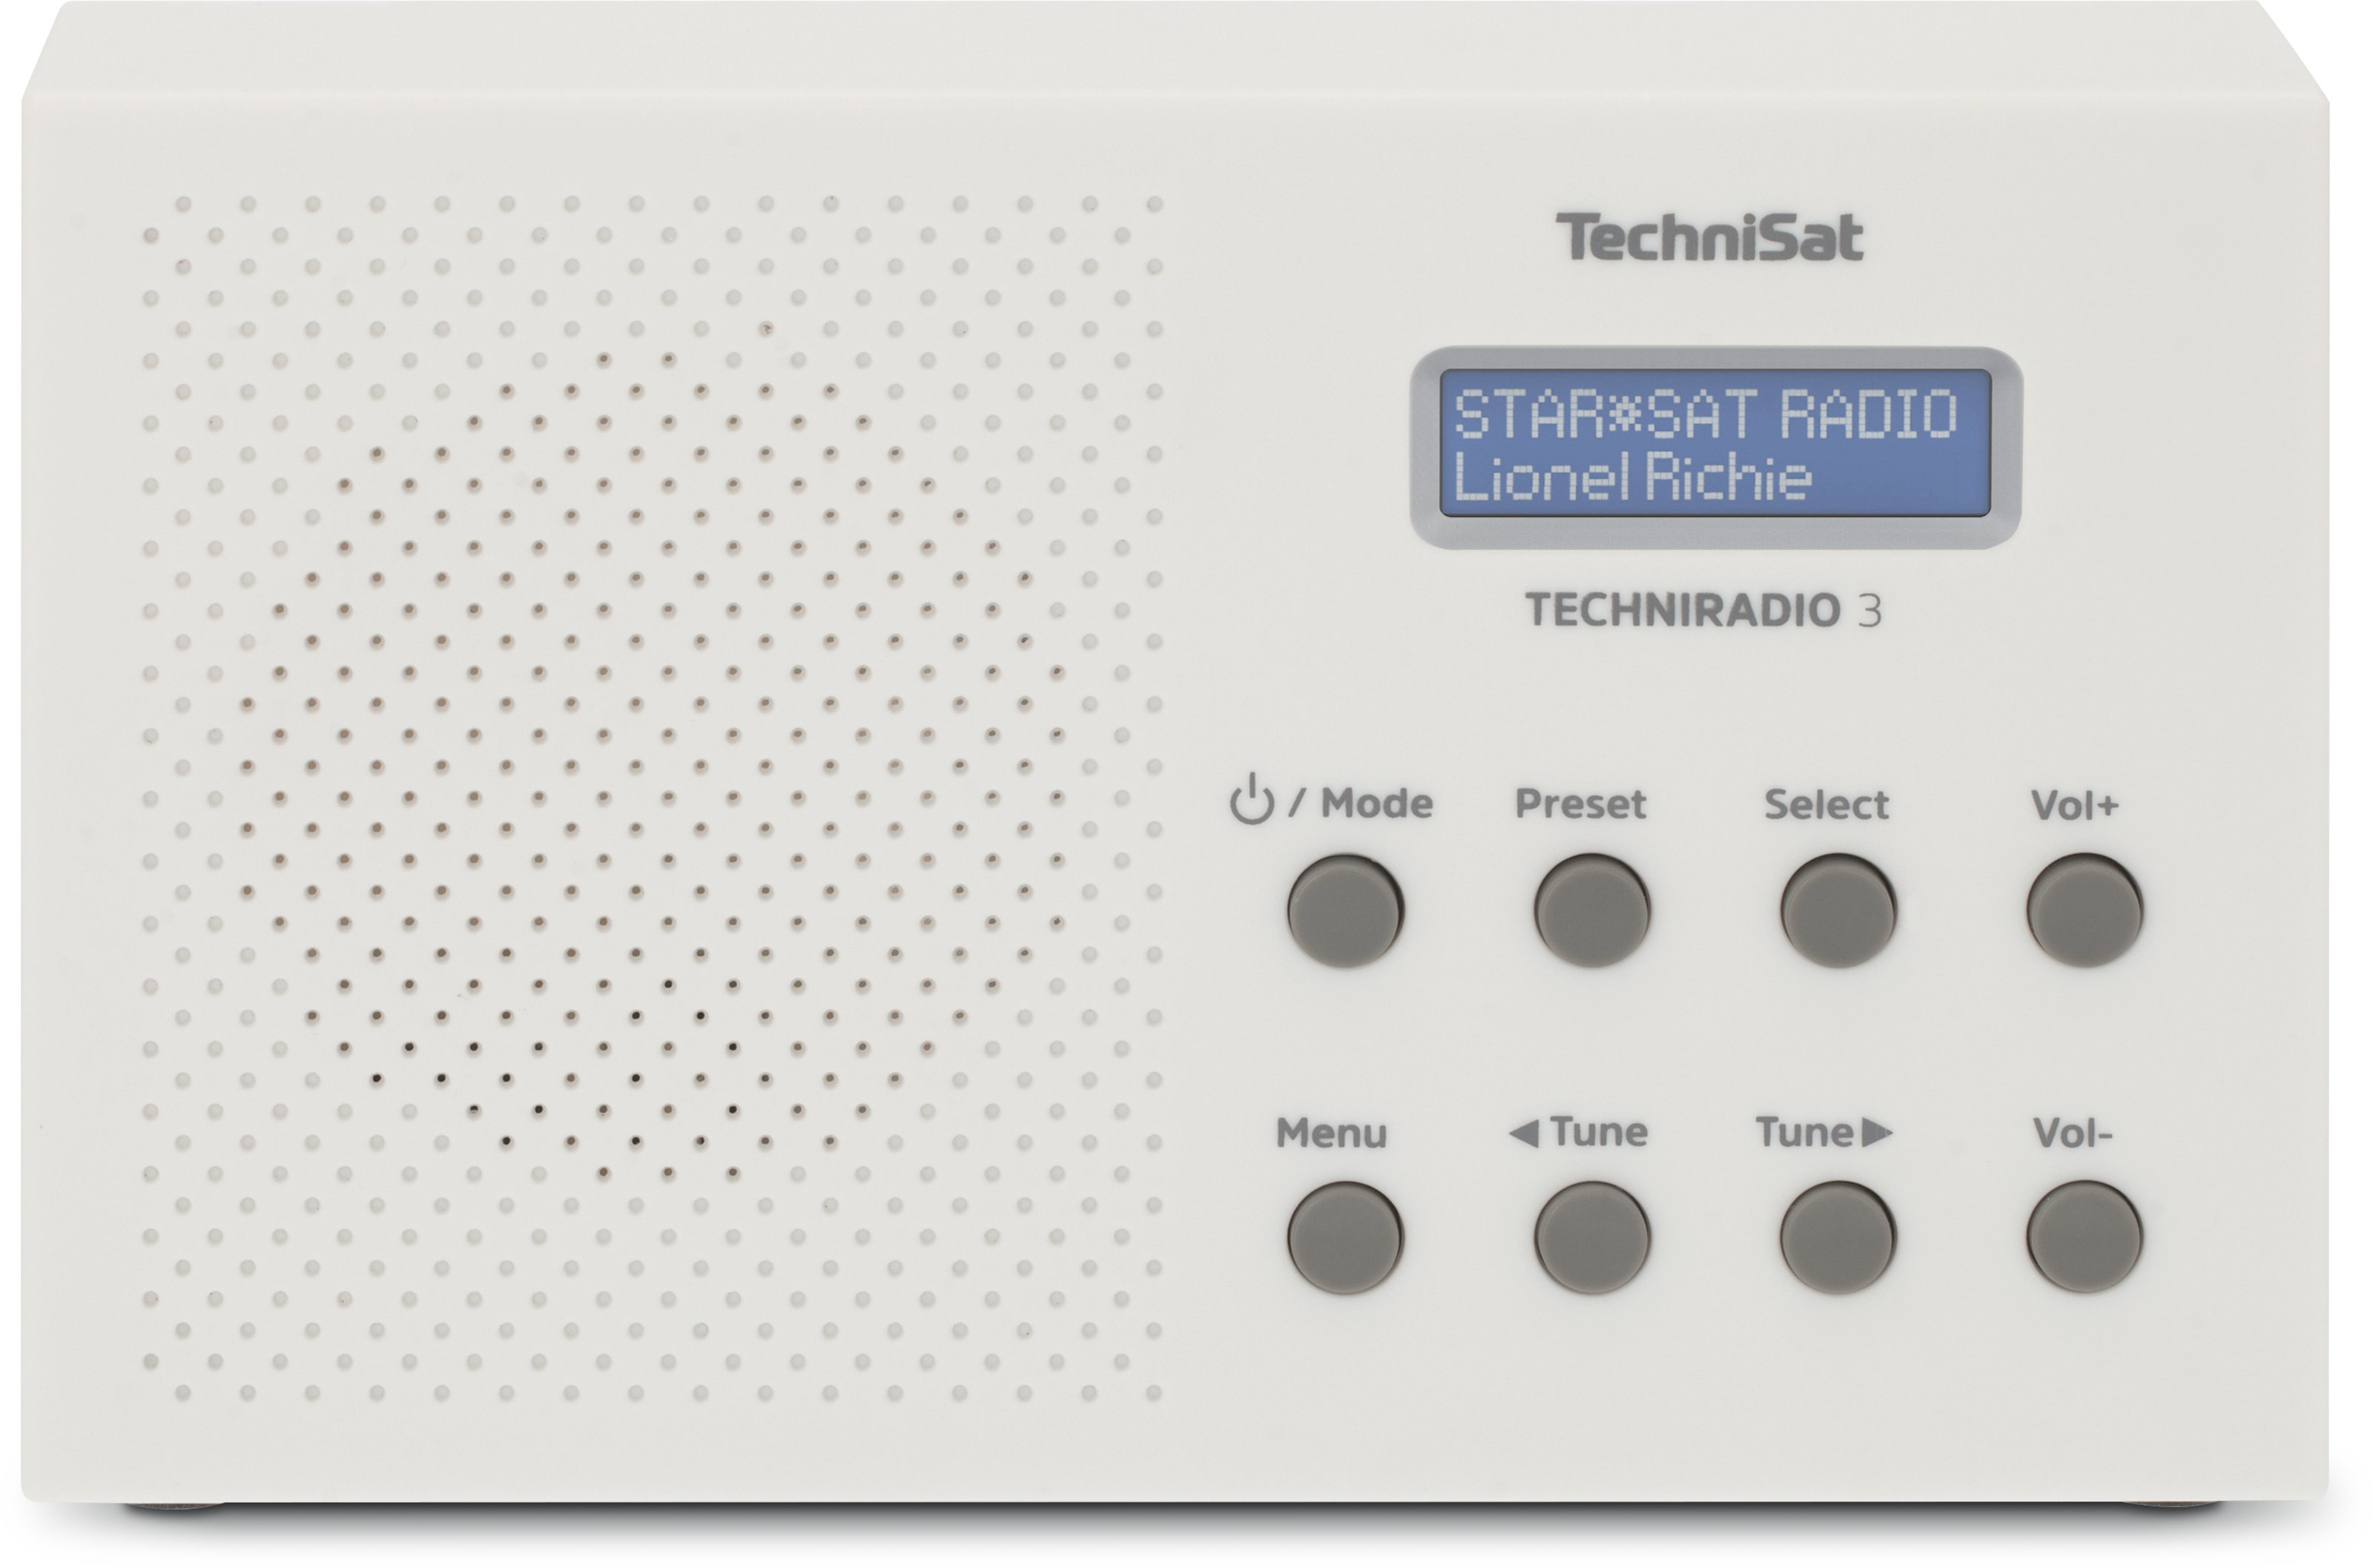 TechniSat TechniRadio 3